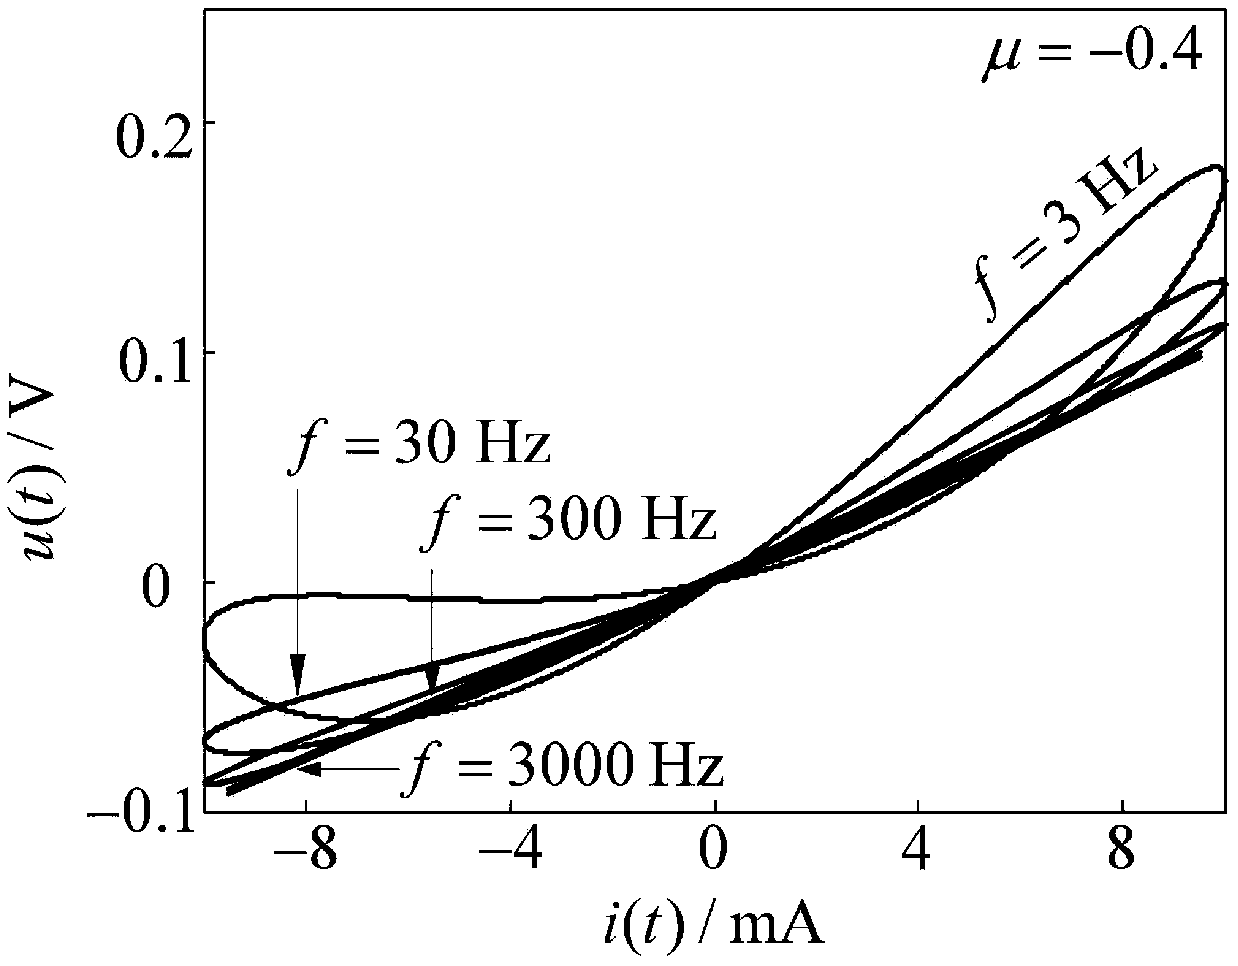 Current fractional order integral control type memristor